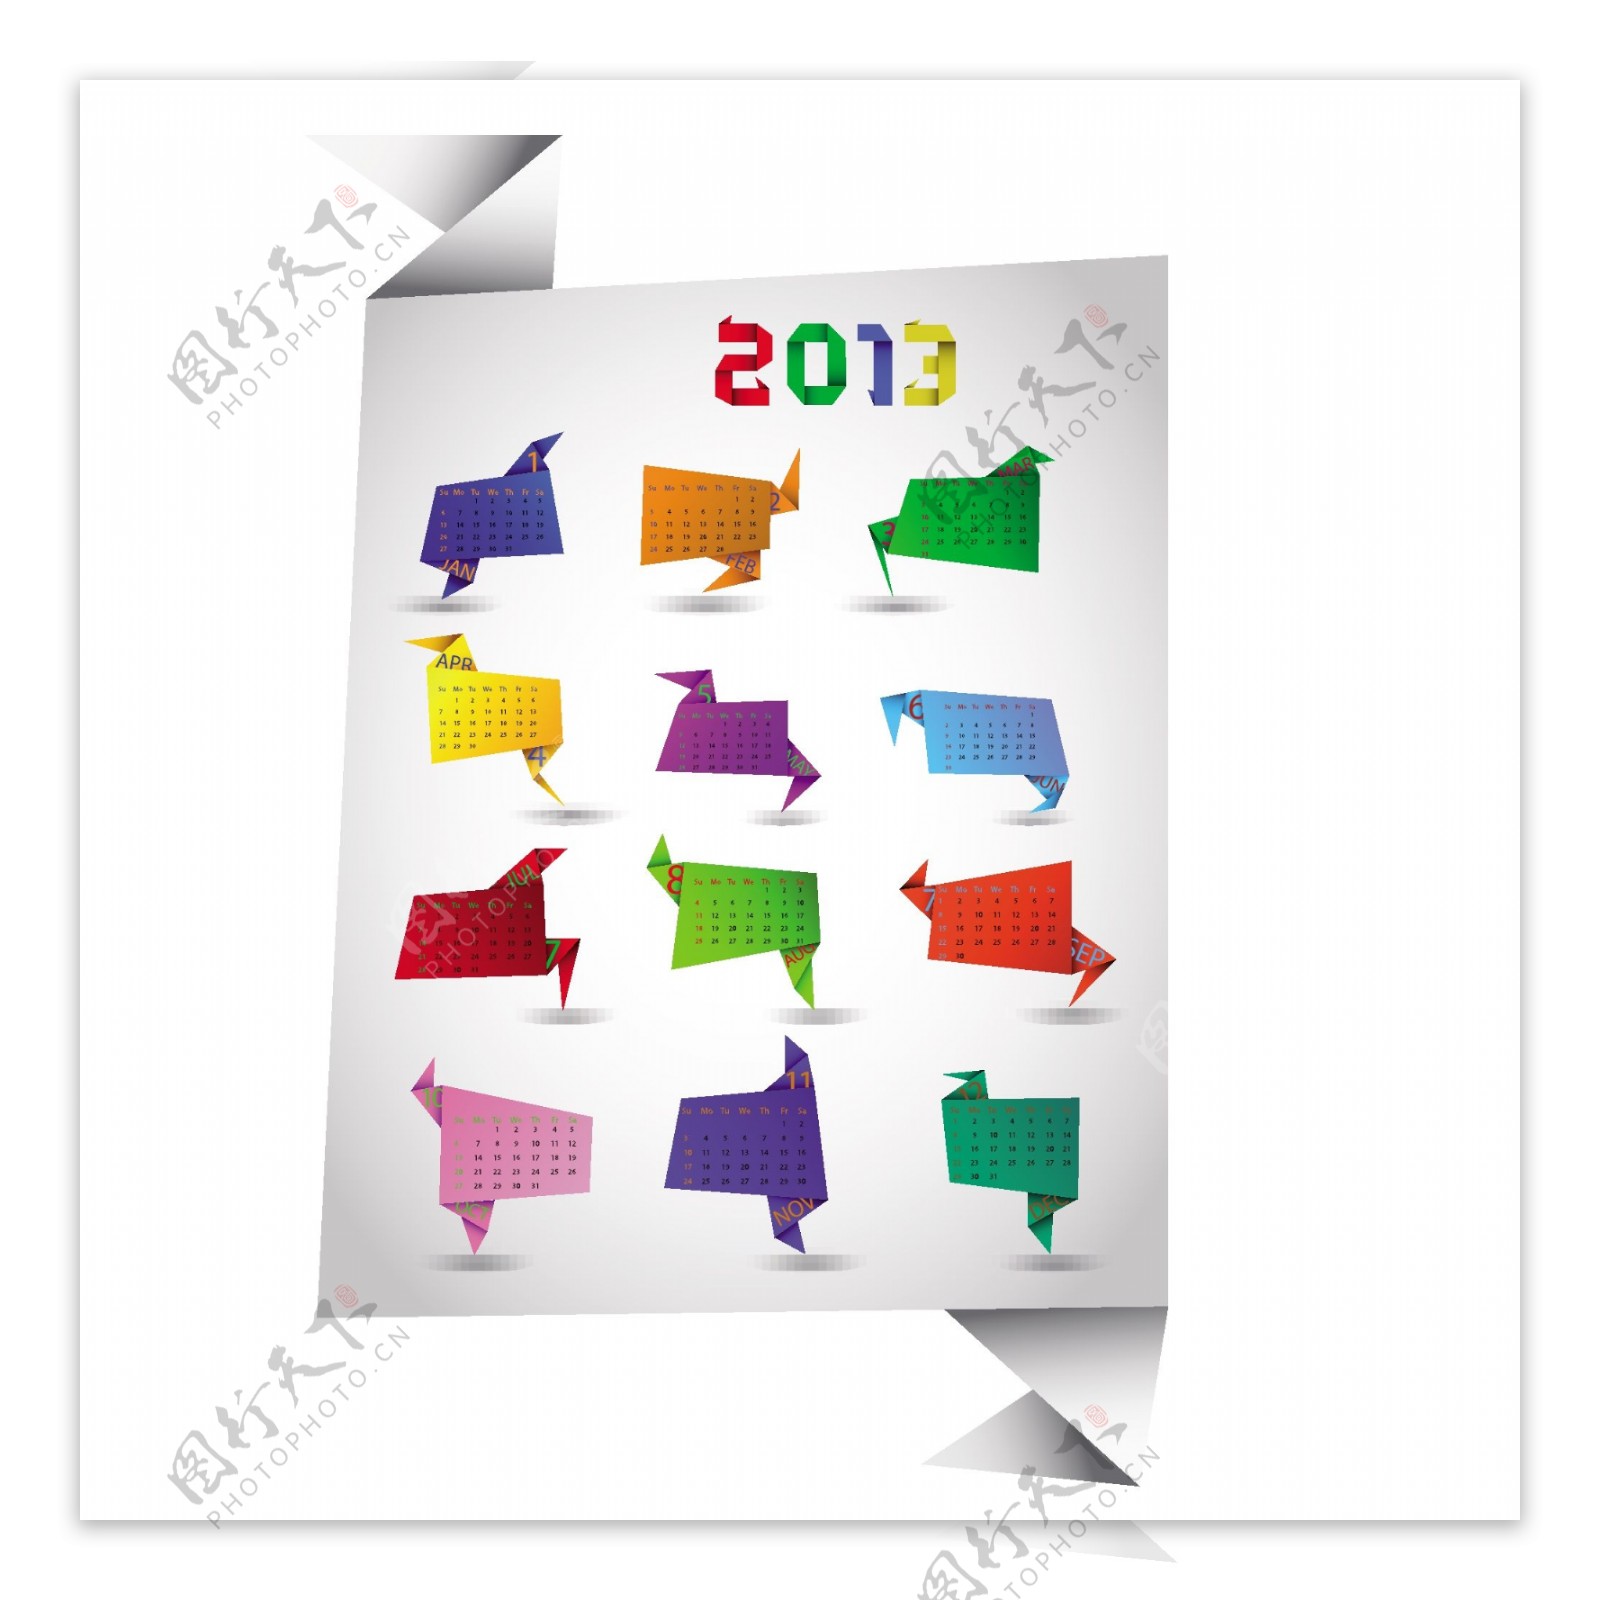 2013新年创意日历模板